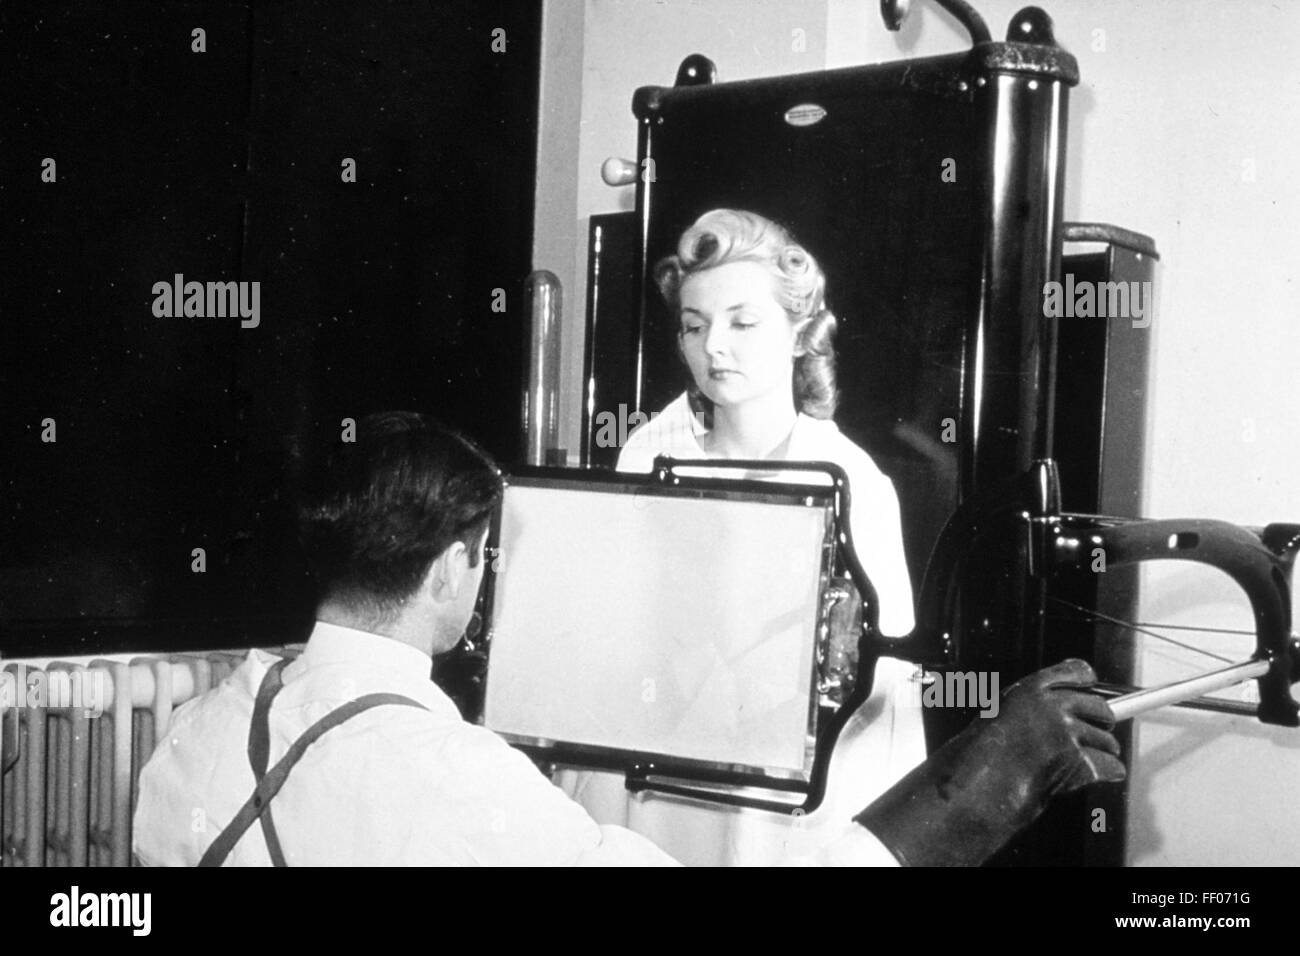 Röntgen-Techniker unter einer Röntgen-Fluroscope im Jahre 1940. Die Röntgenröhre ist hinter dem Patienten. Der Betreiber Glasscheibe hat eine fluoreszierende Beschichtung zeigt das Bild. Diese Technik bietet eine viel höhere Dosis der Strahlung als Filmbilder. Das Foto wurde verwendet, um die Idee entgegen zu wirken, dass diese Strahlung gefährlich war. Foto: National Cancer Institute of America Stockfoto